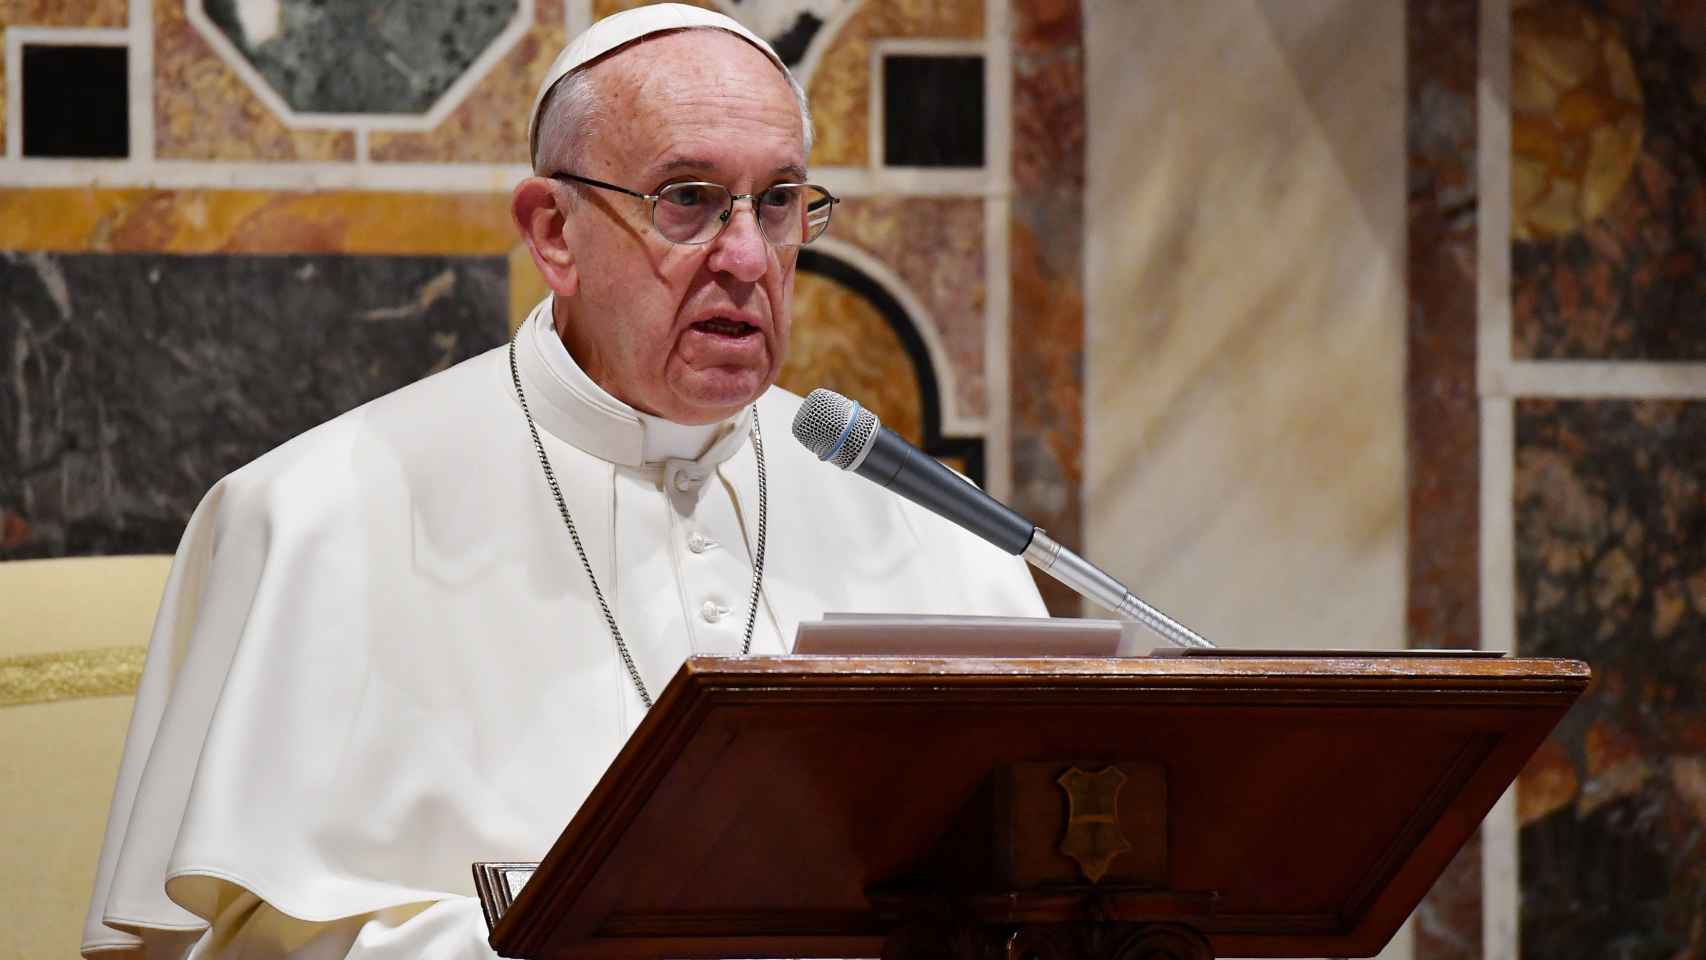 El papa condena el extremismo religioso y defiende la acogida de refugiados